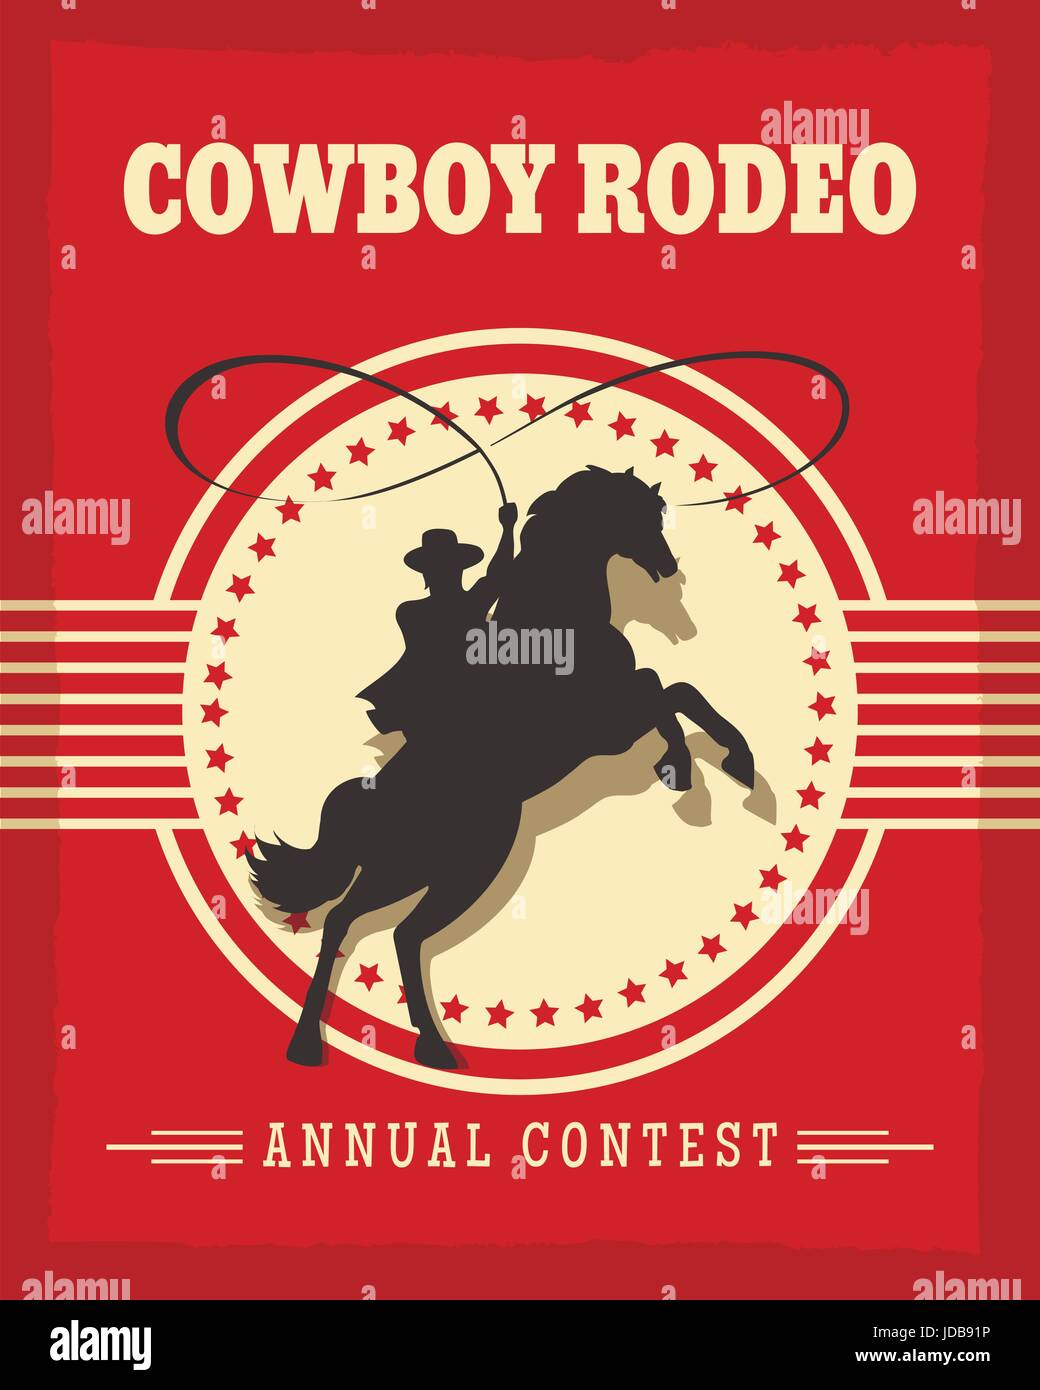 Old West Rodeo Cowboys retro poster vector illustration avec gaucho on horse Illustration de Vecteur